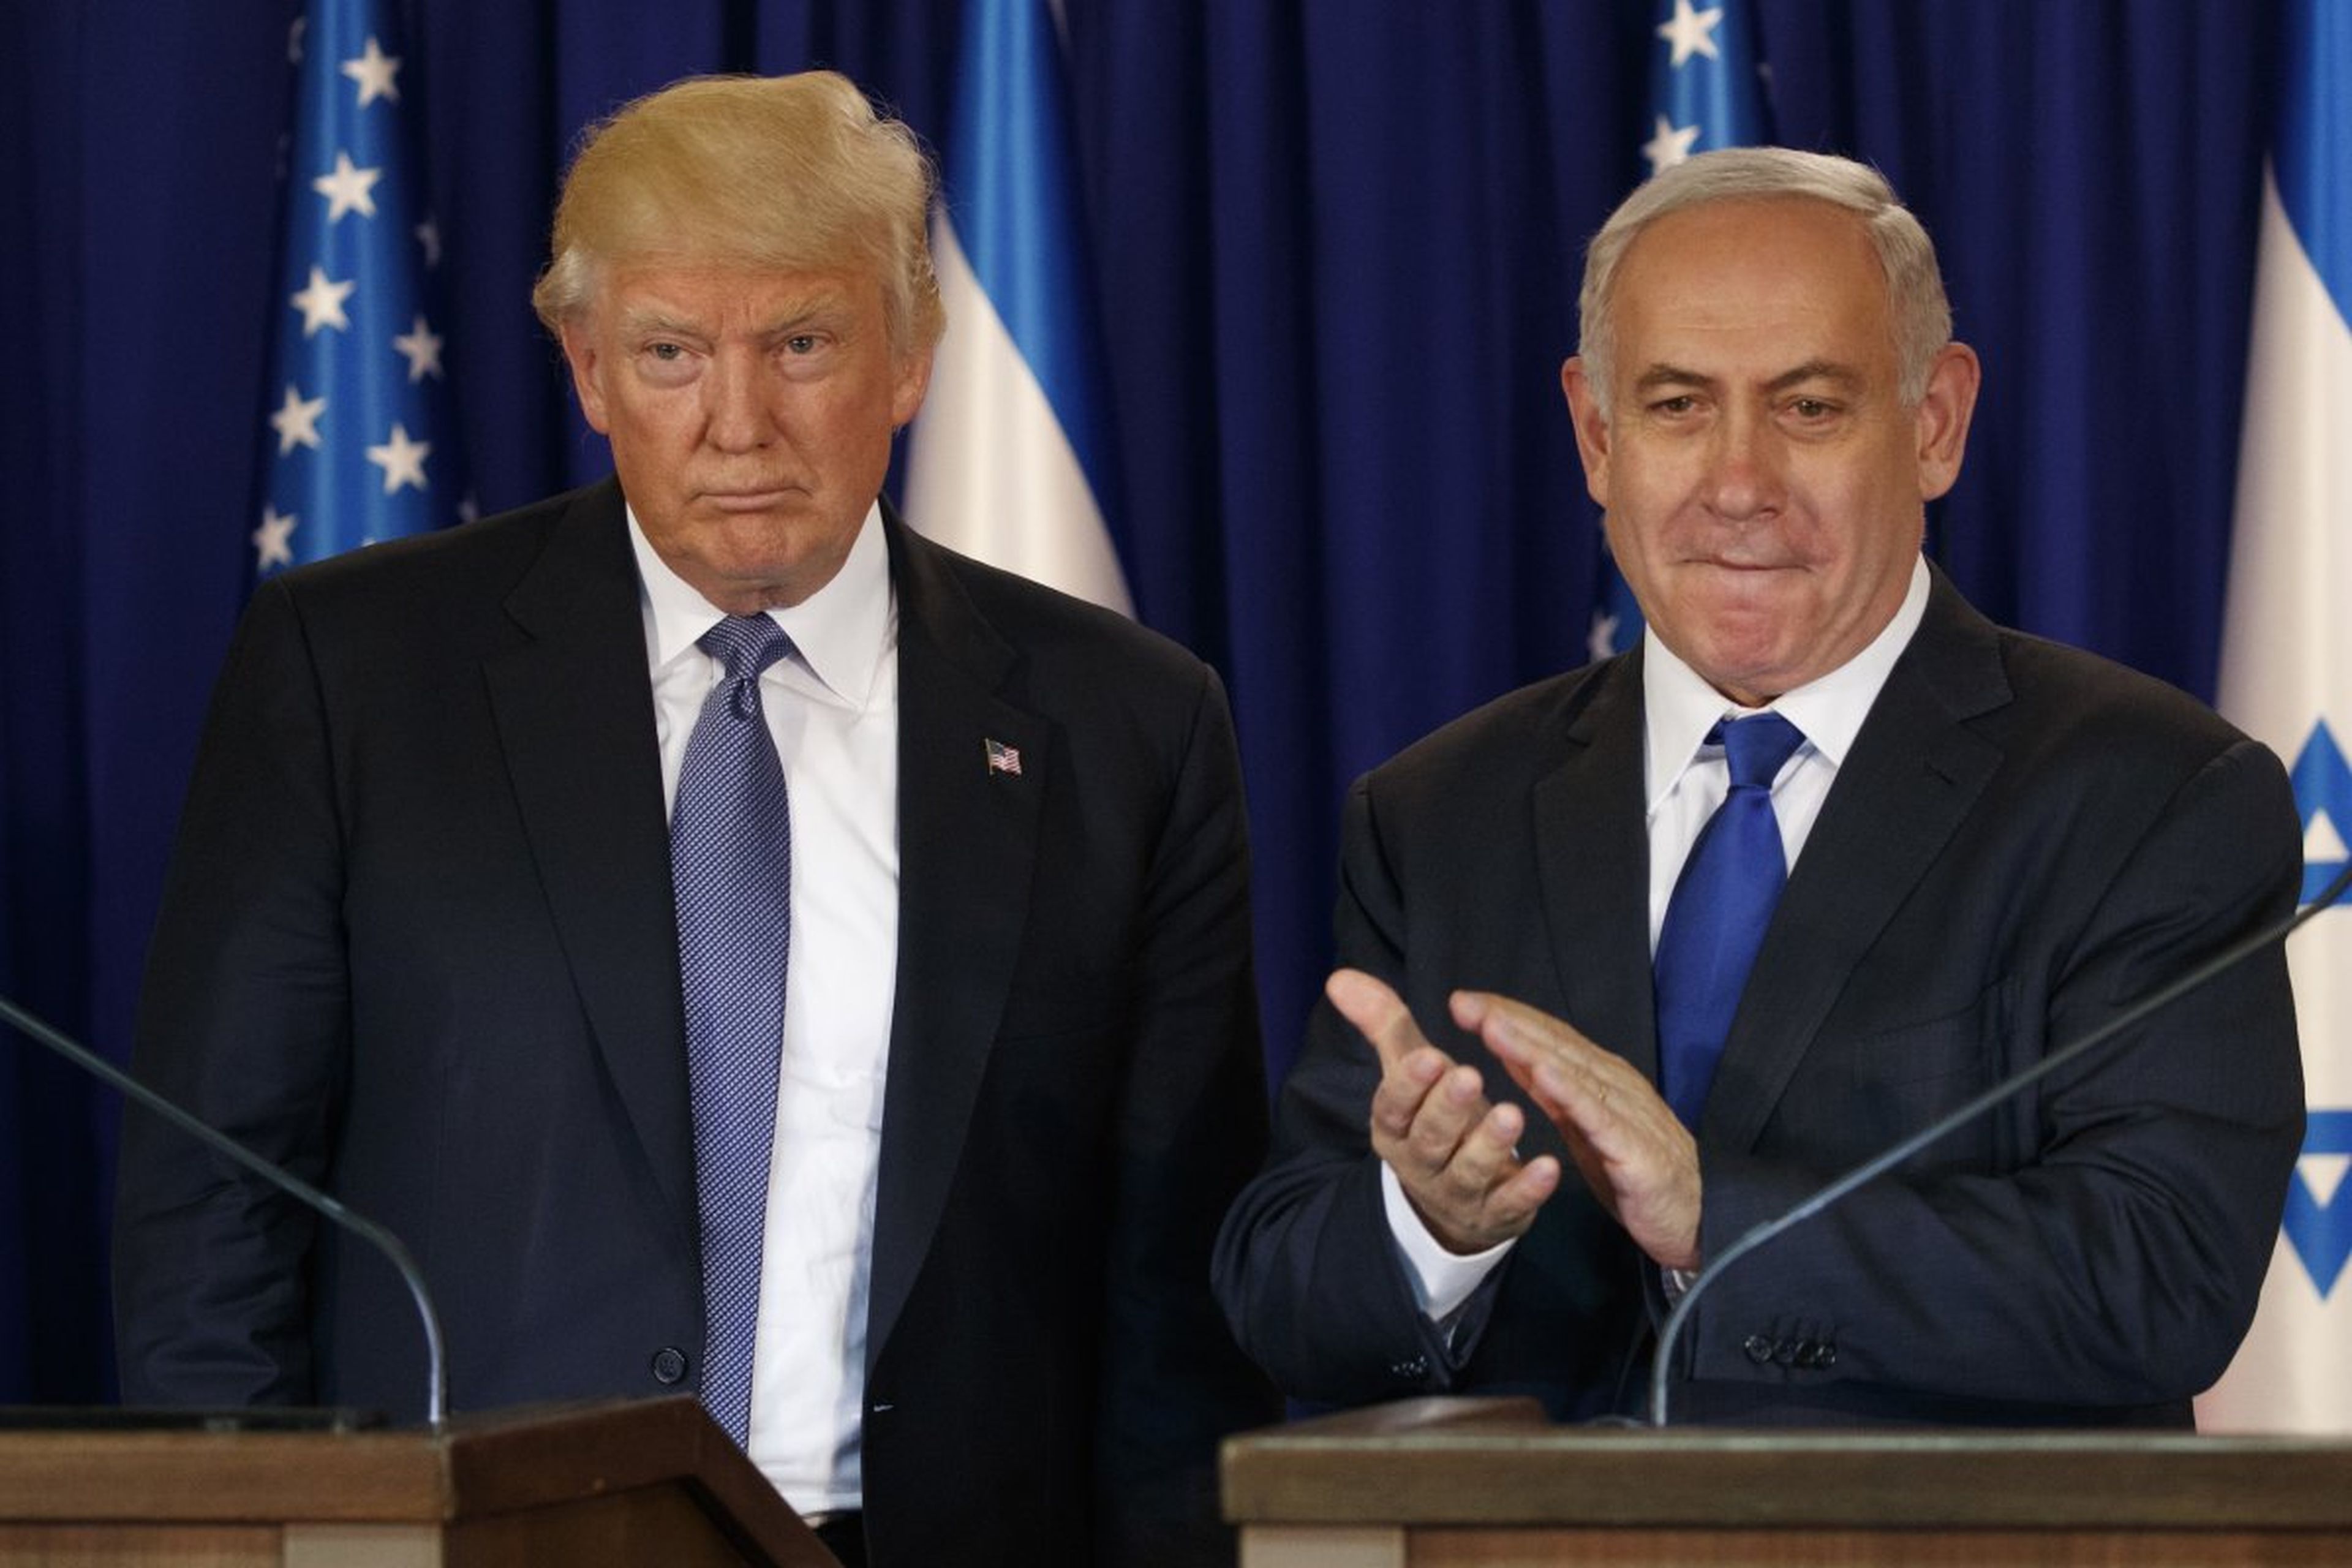 El presidente Donald Trump, junto al primer ministro israelí Benjamin Netanyahu después de hacer una declaración conjunta en Jerusalén en mayo de 2017.